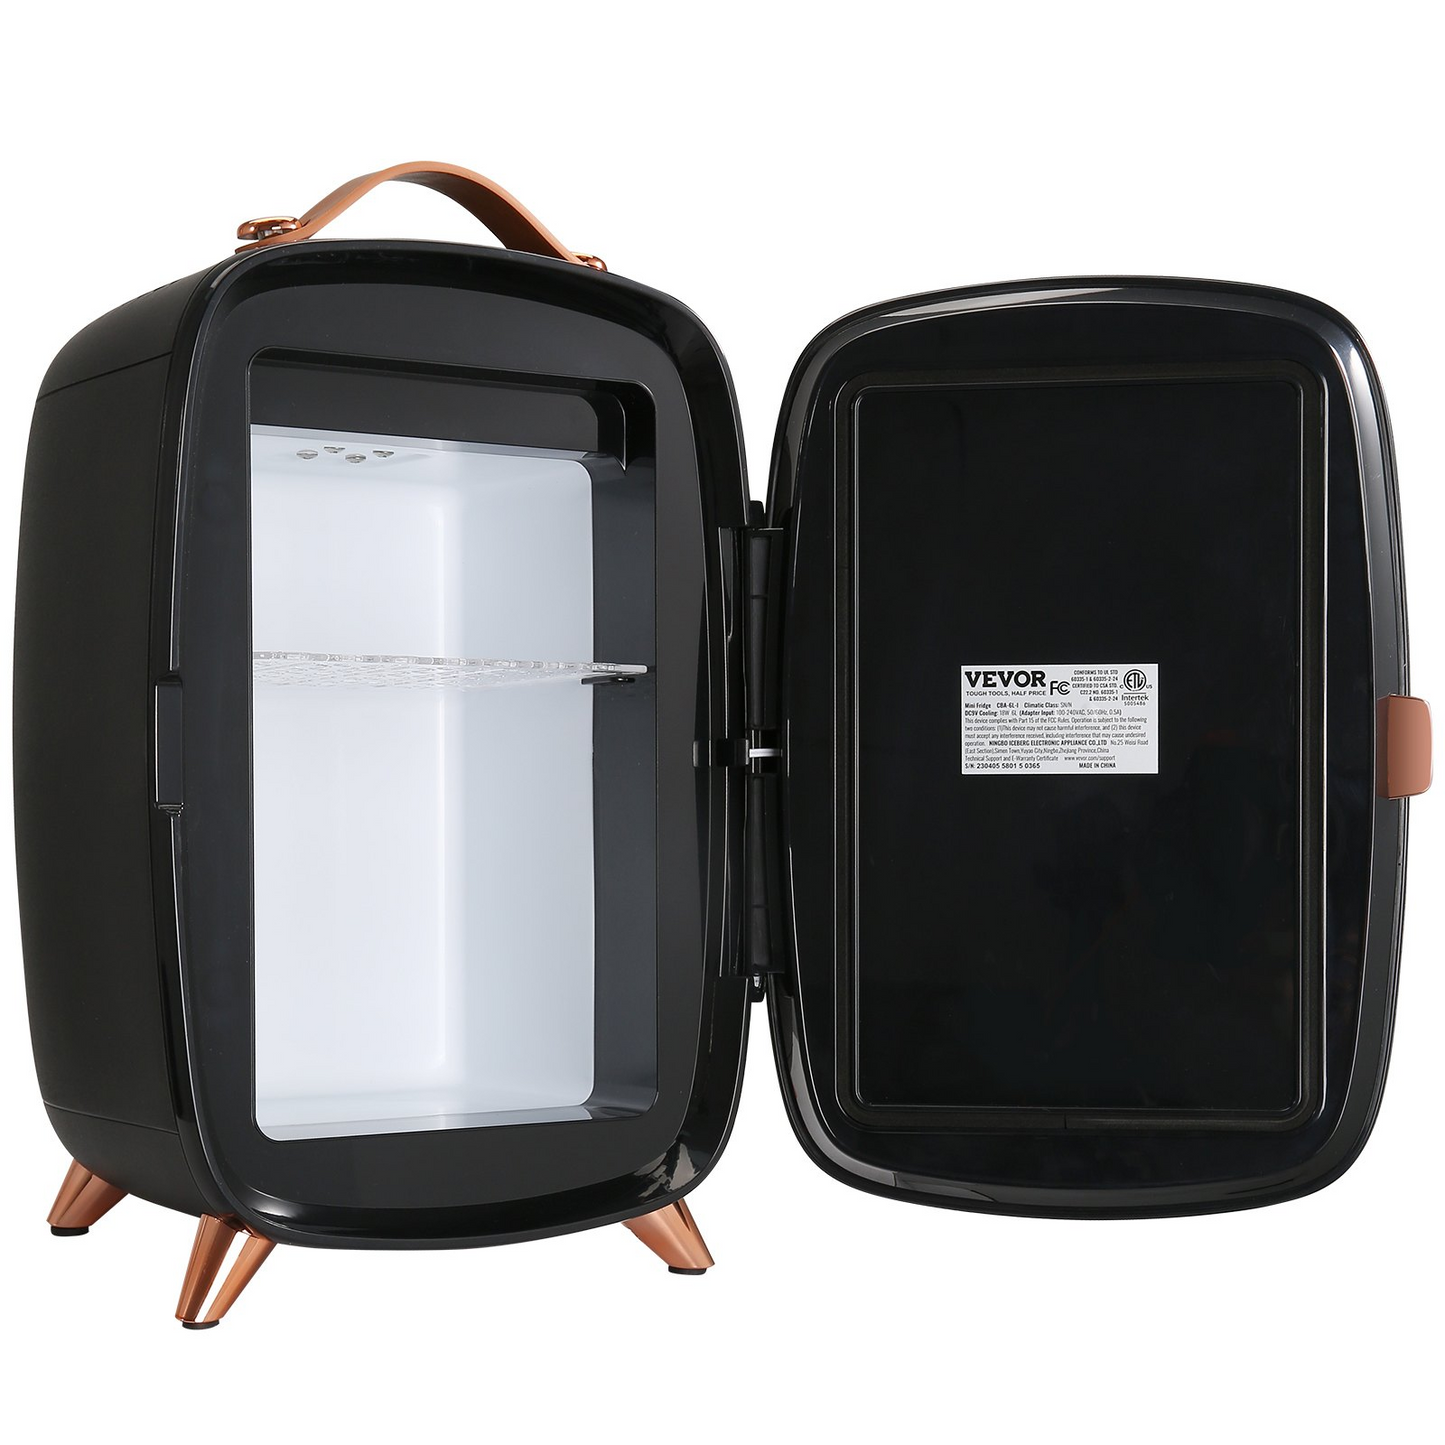 Vevor Mini Fridge, 6L Skincare Fridge with LED Light and HD Mirror, Black